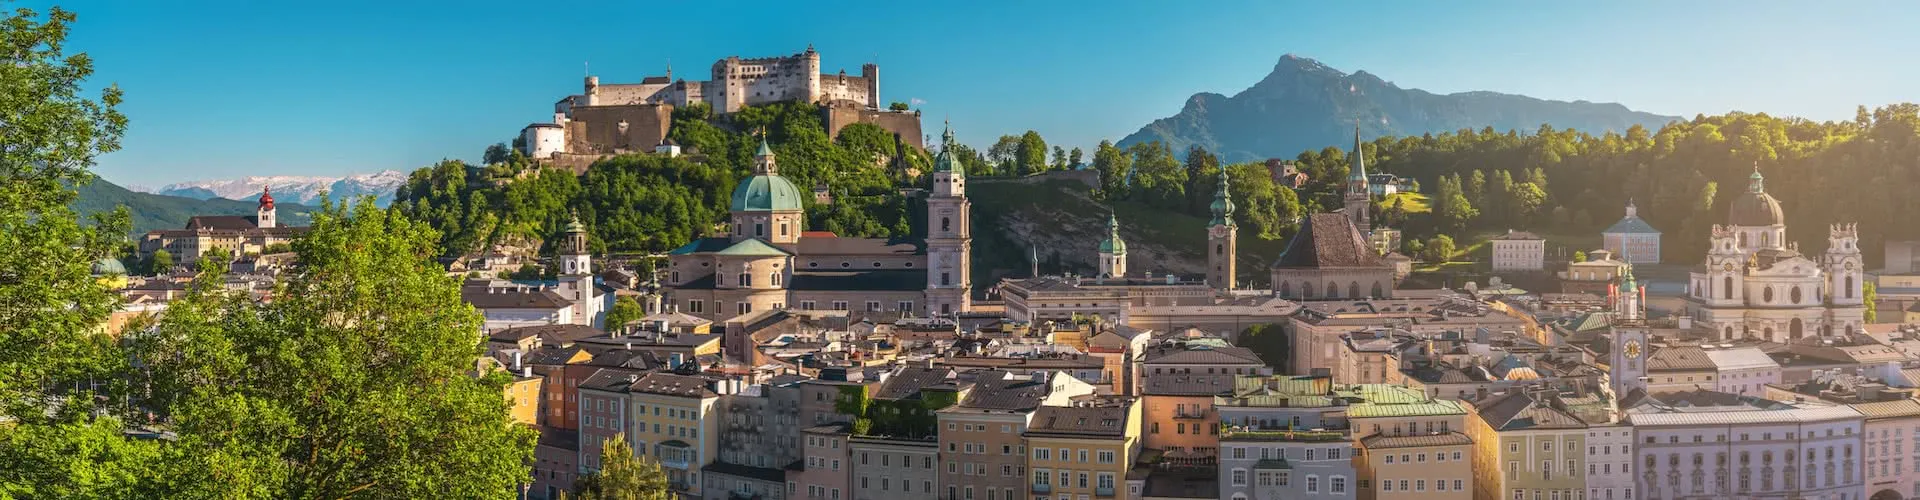 Salzburg - das Reiseziel für Klassenfahrten